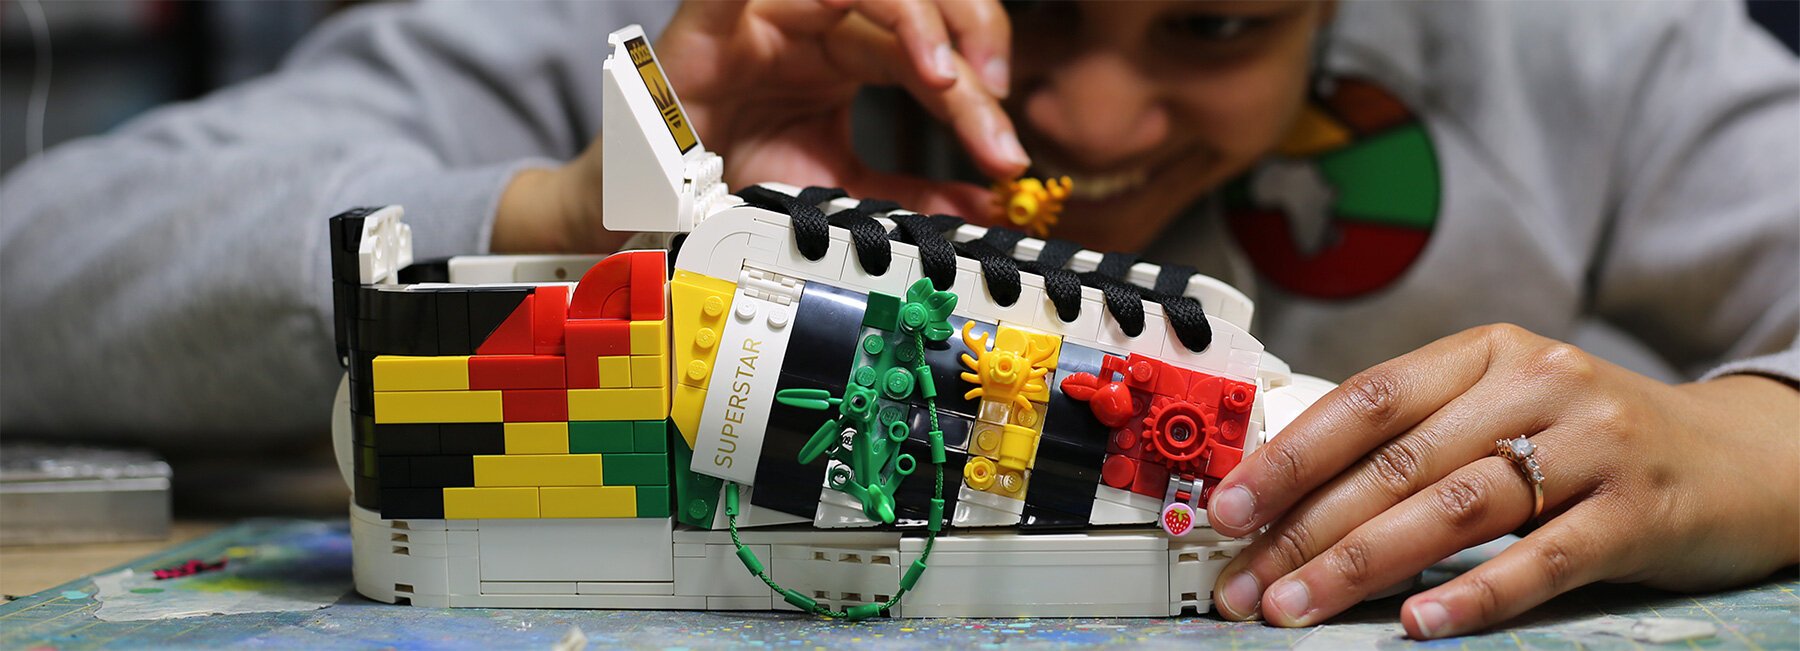 Adidas cria tênis com tijolos LEGO